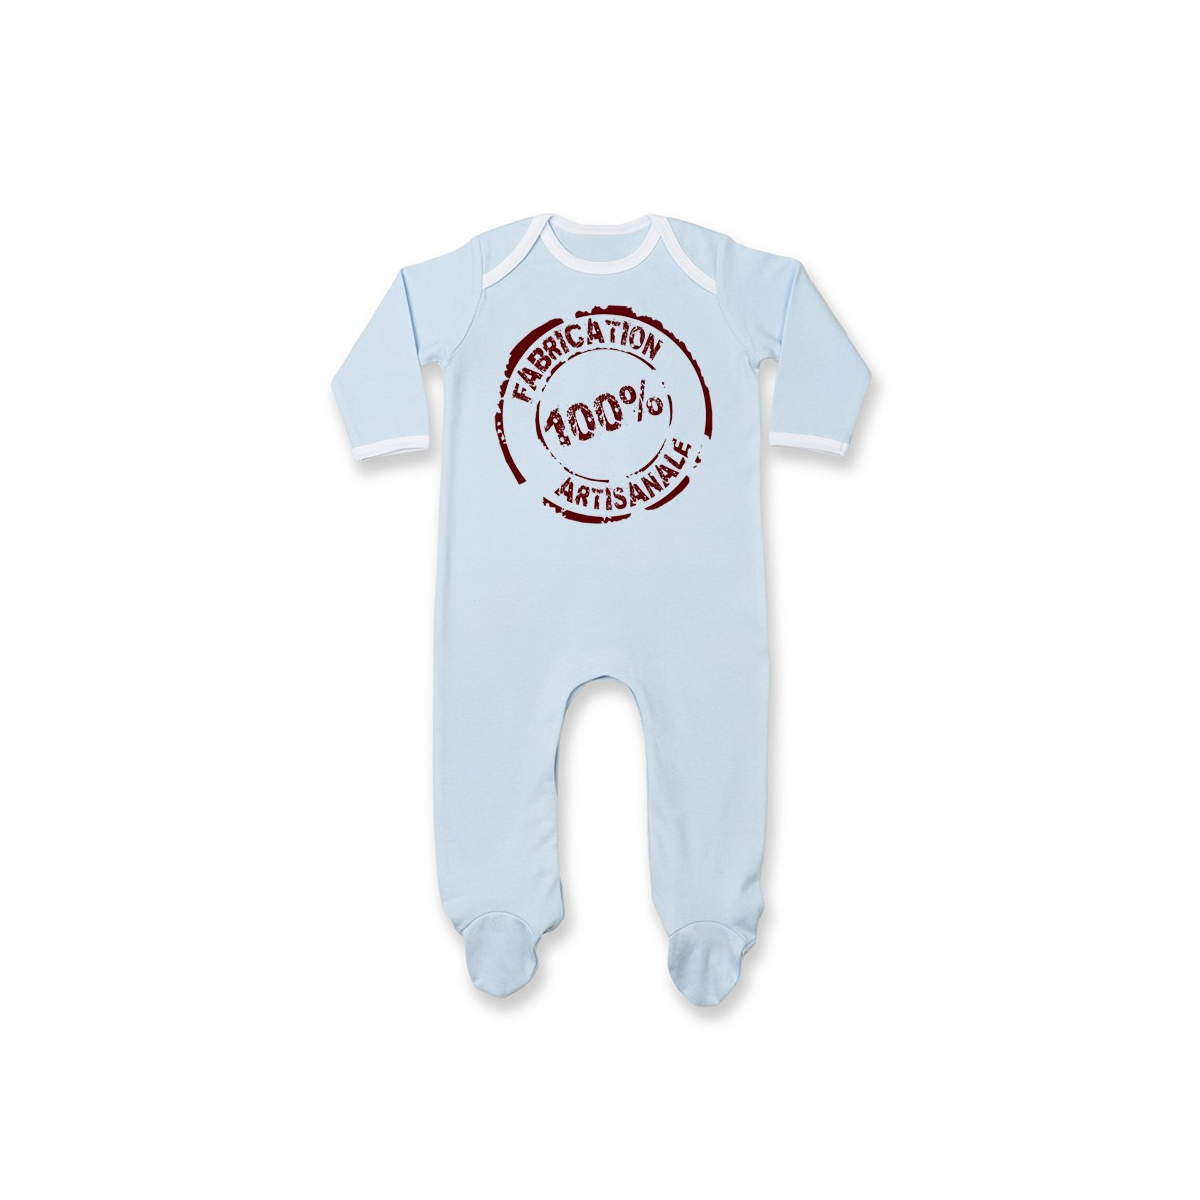 Pyjama bébé Fabrication 100% Artisanale